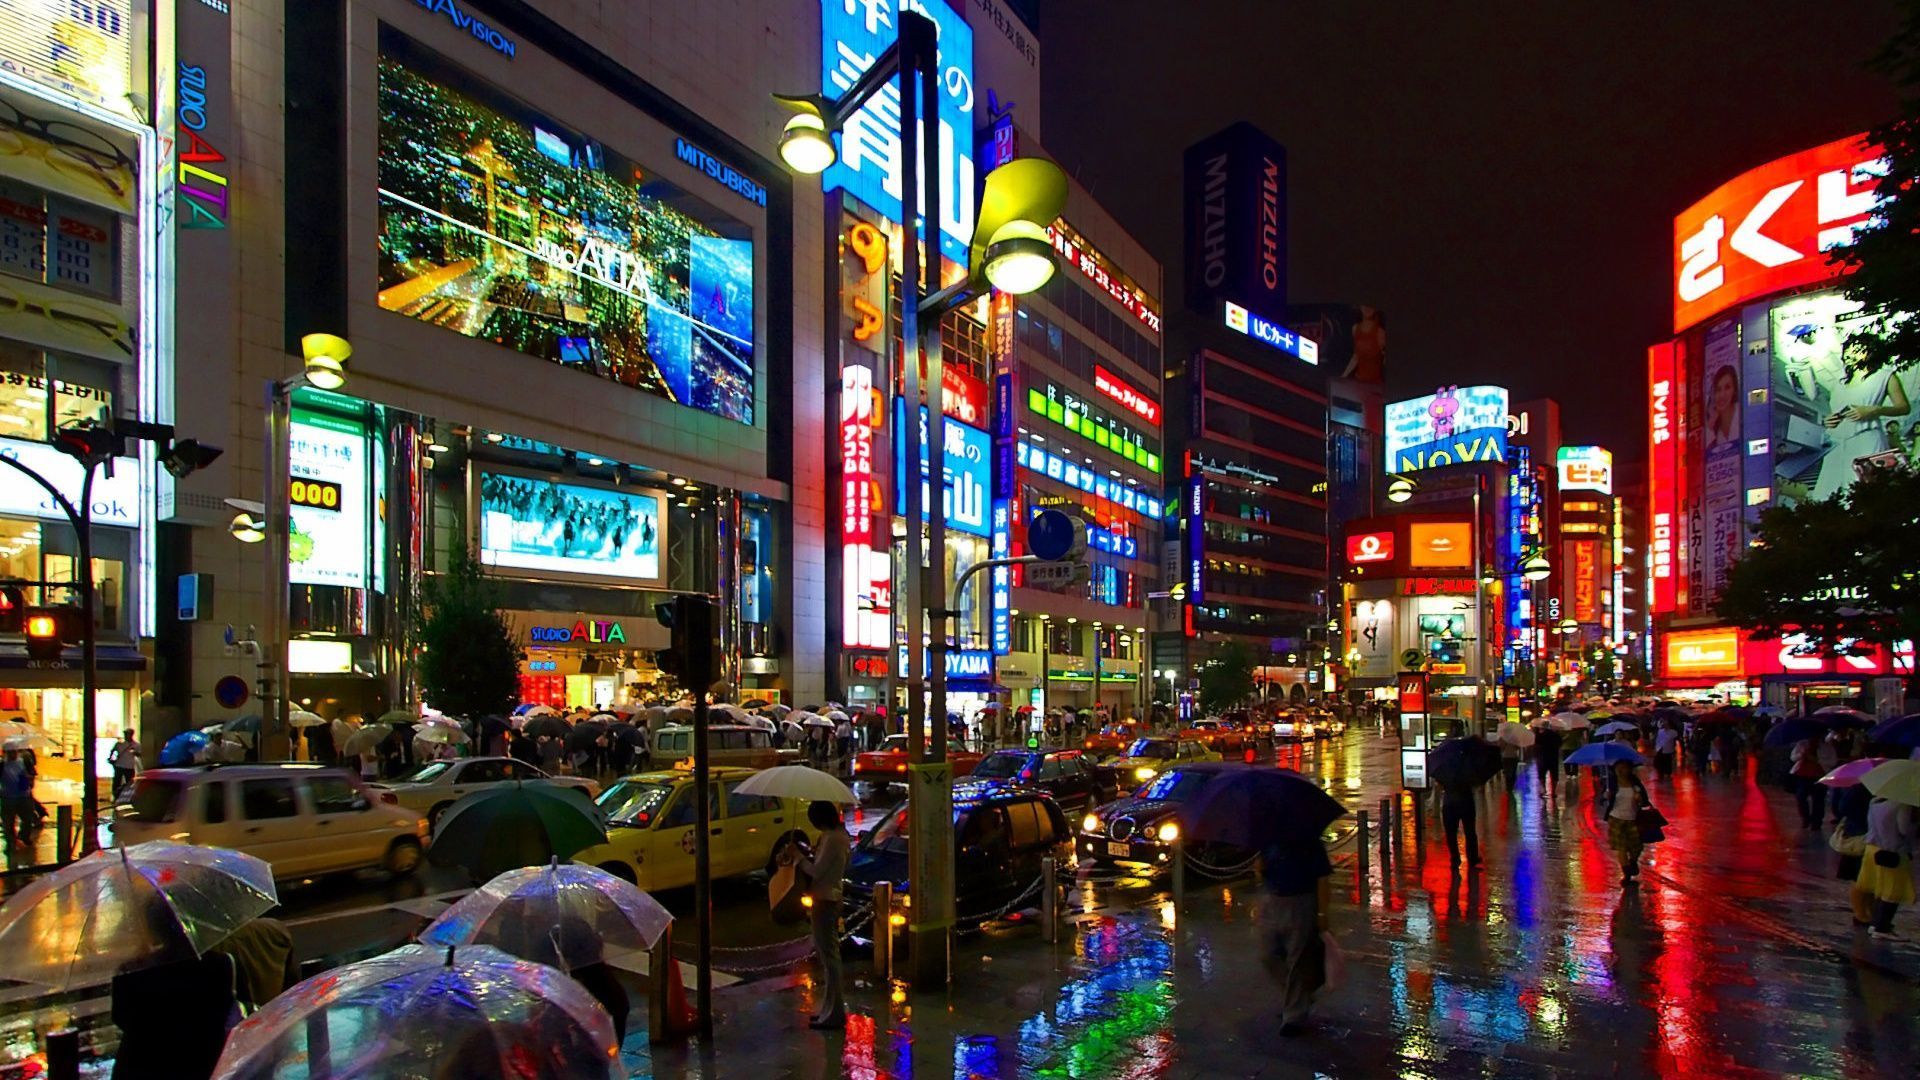 Japan City Streets At Night - wallpaper.